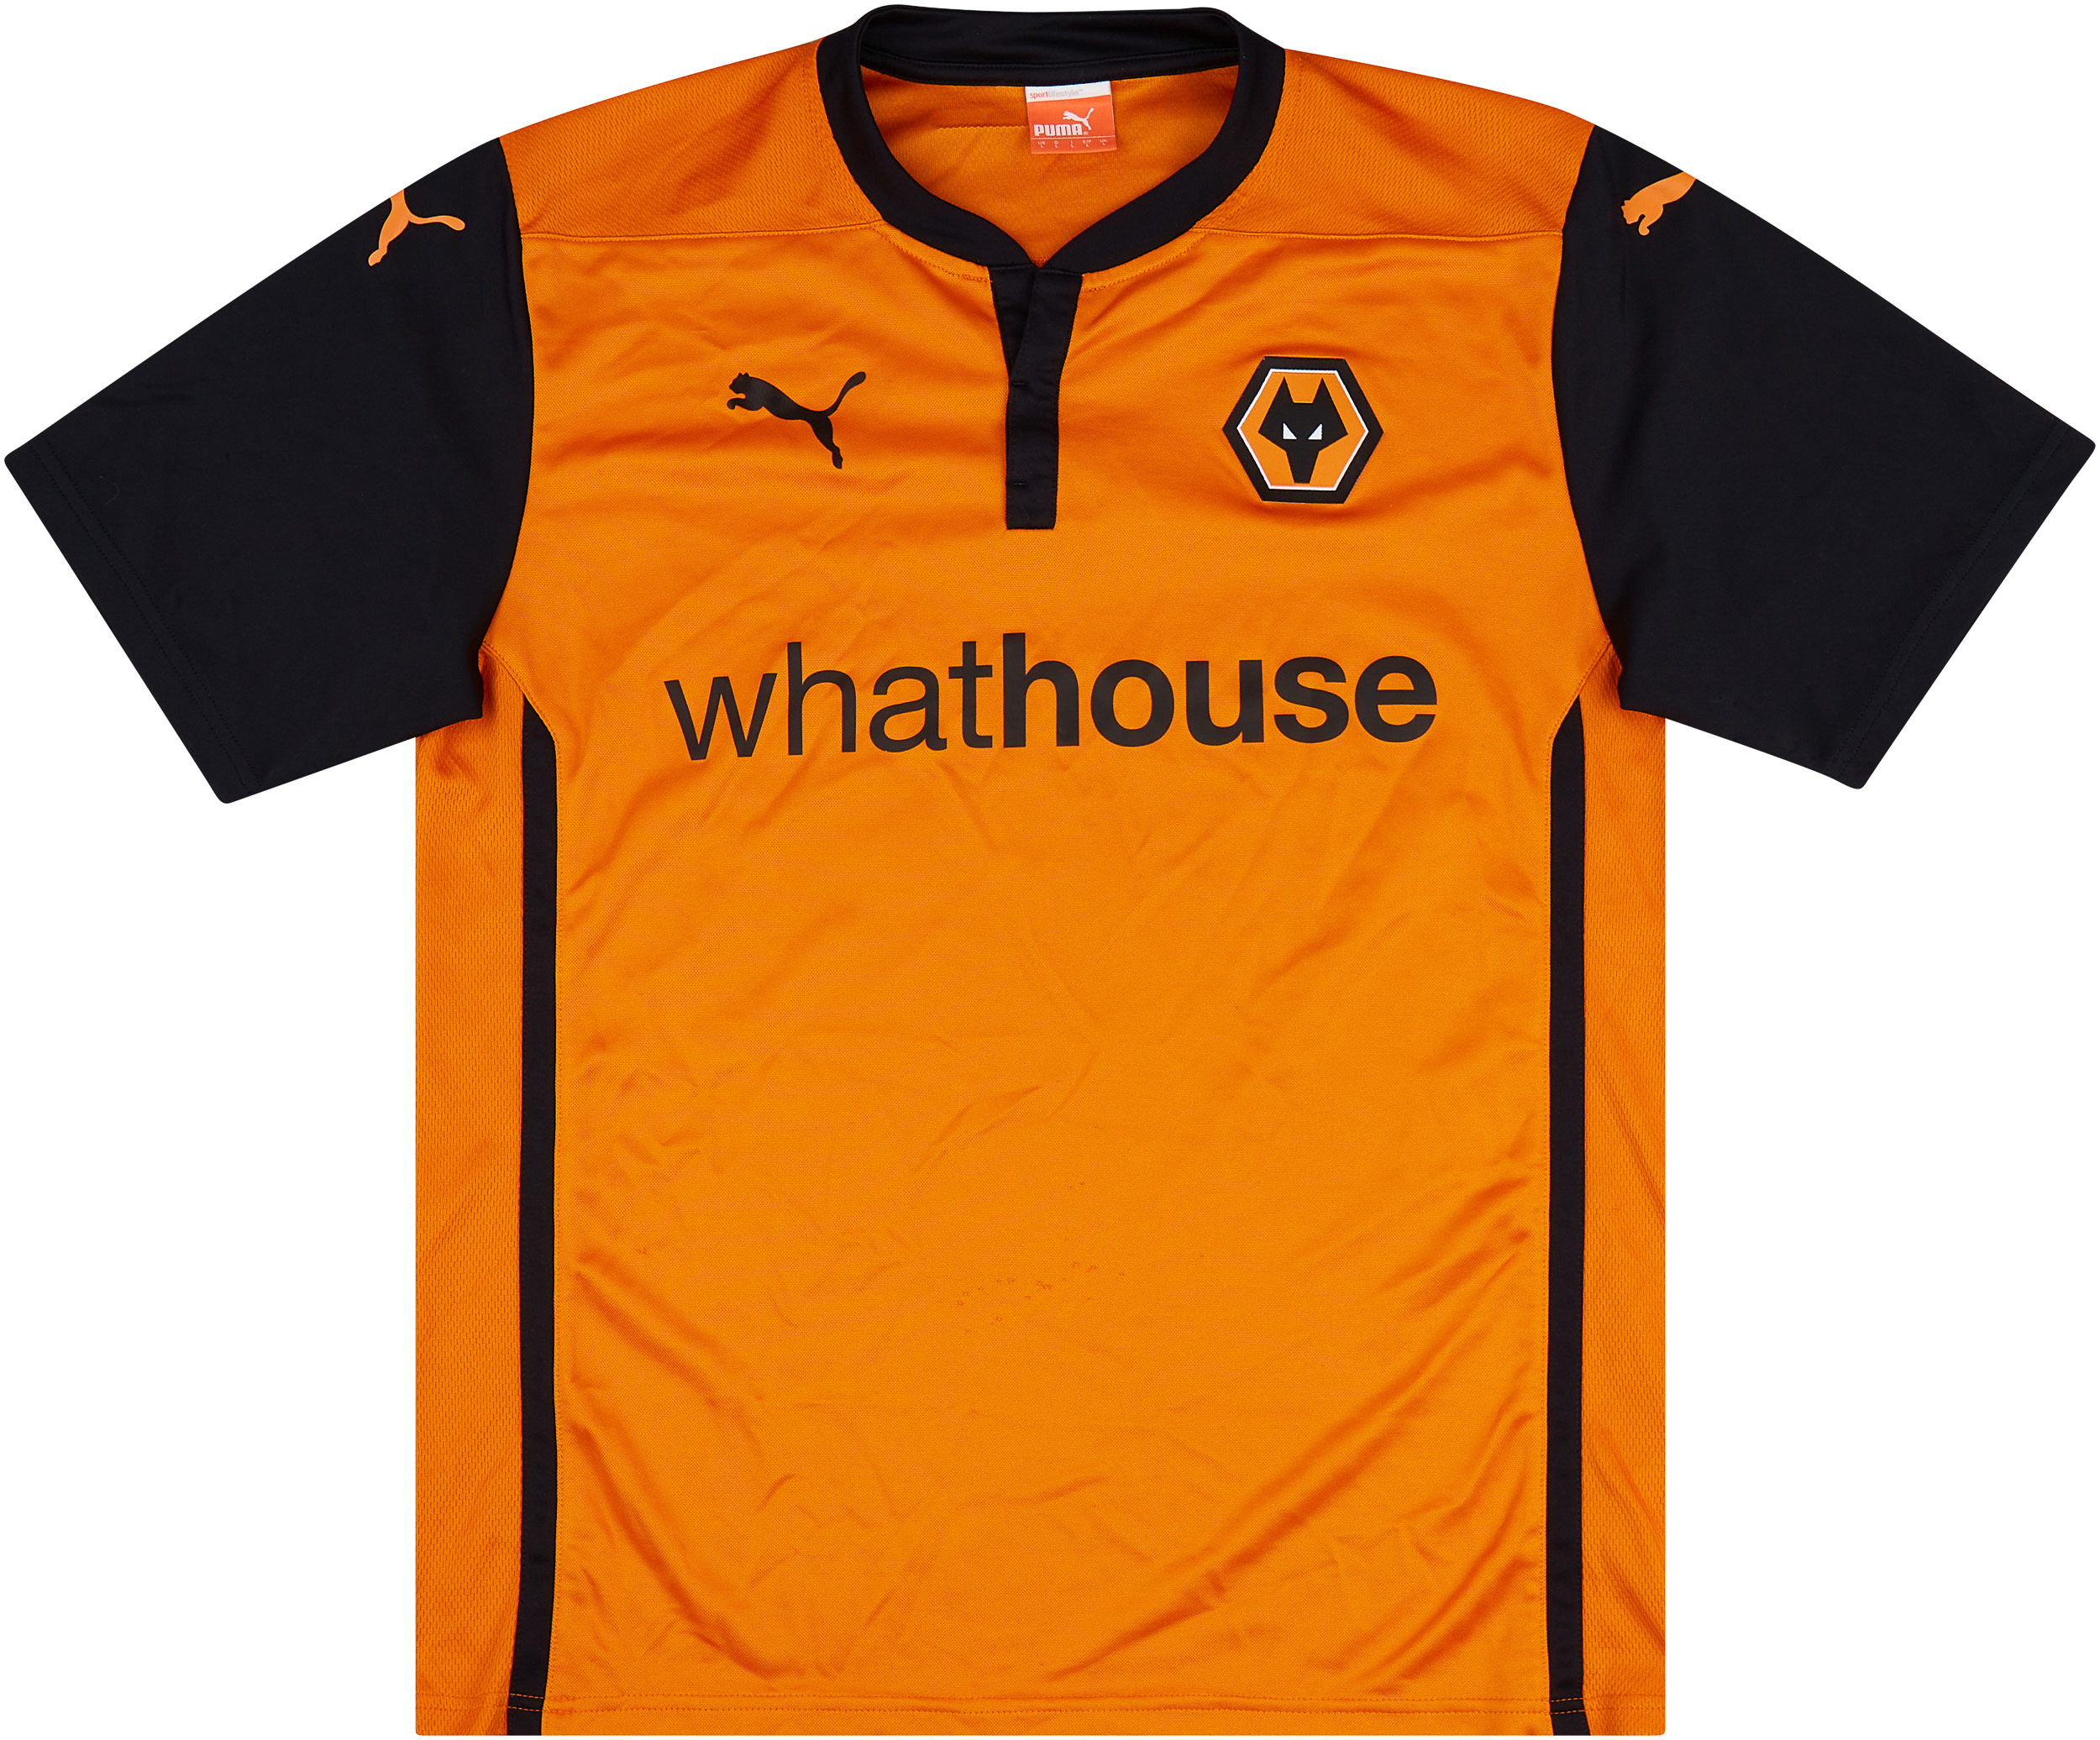 2014-15 Wolves Home Shirt - Excellent 8/10 - (L)